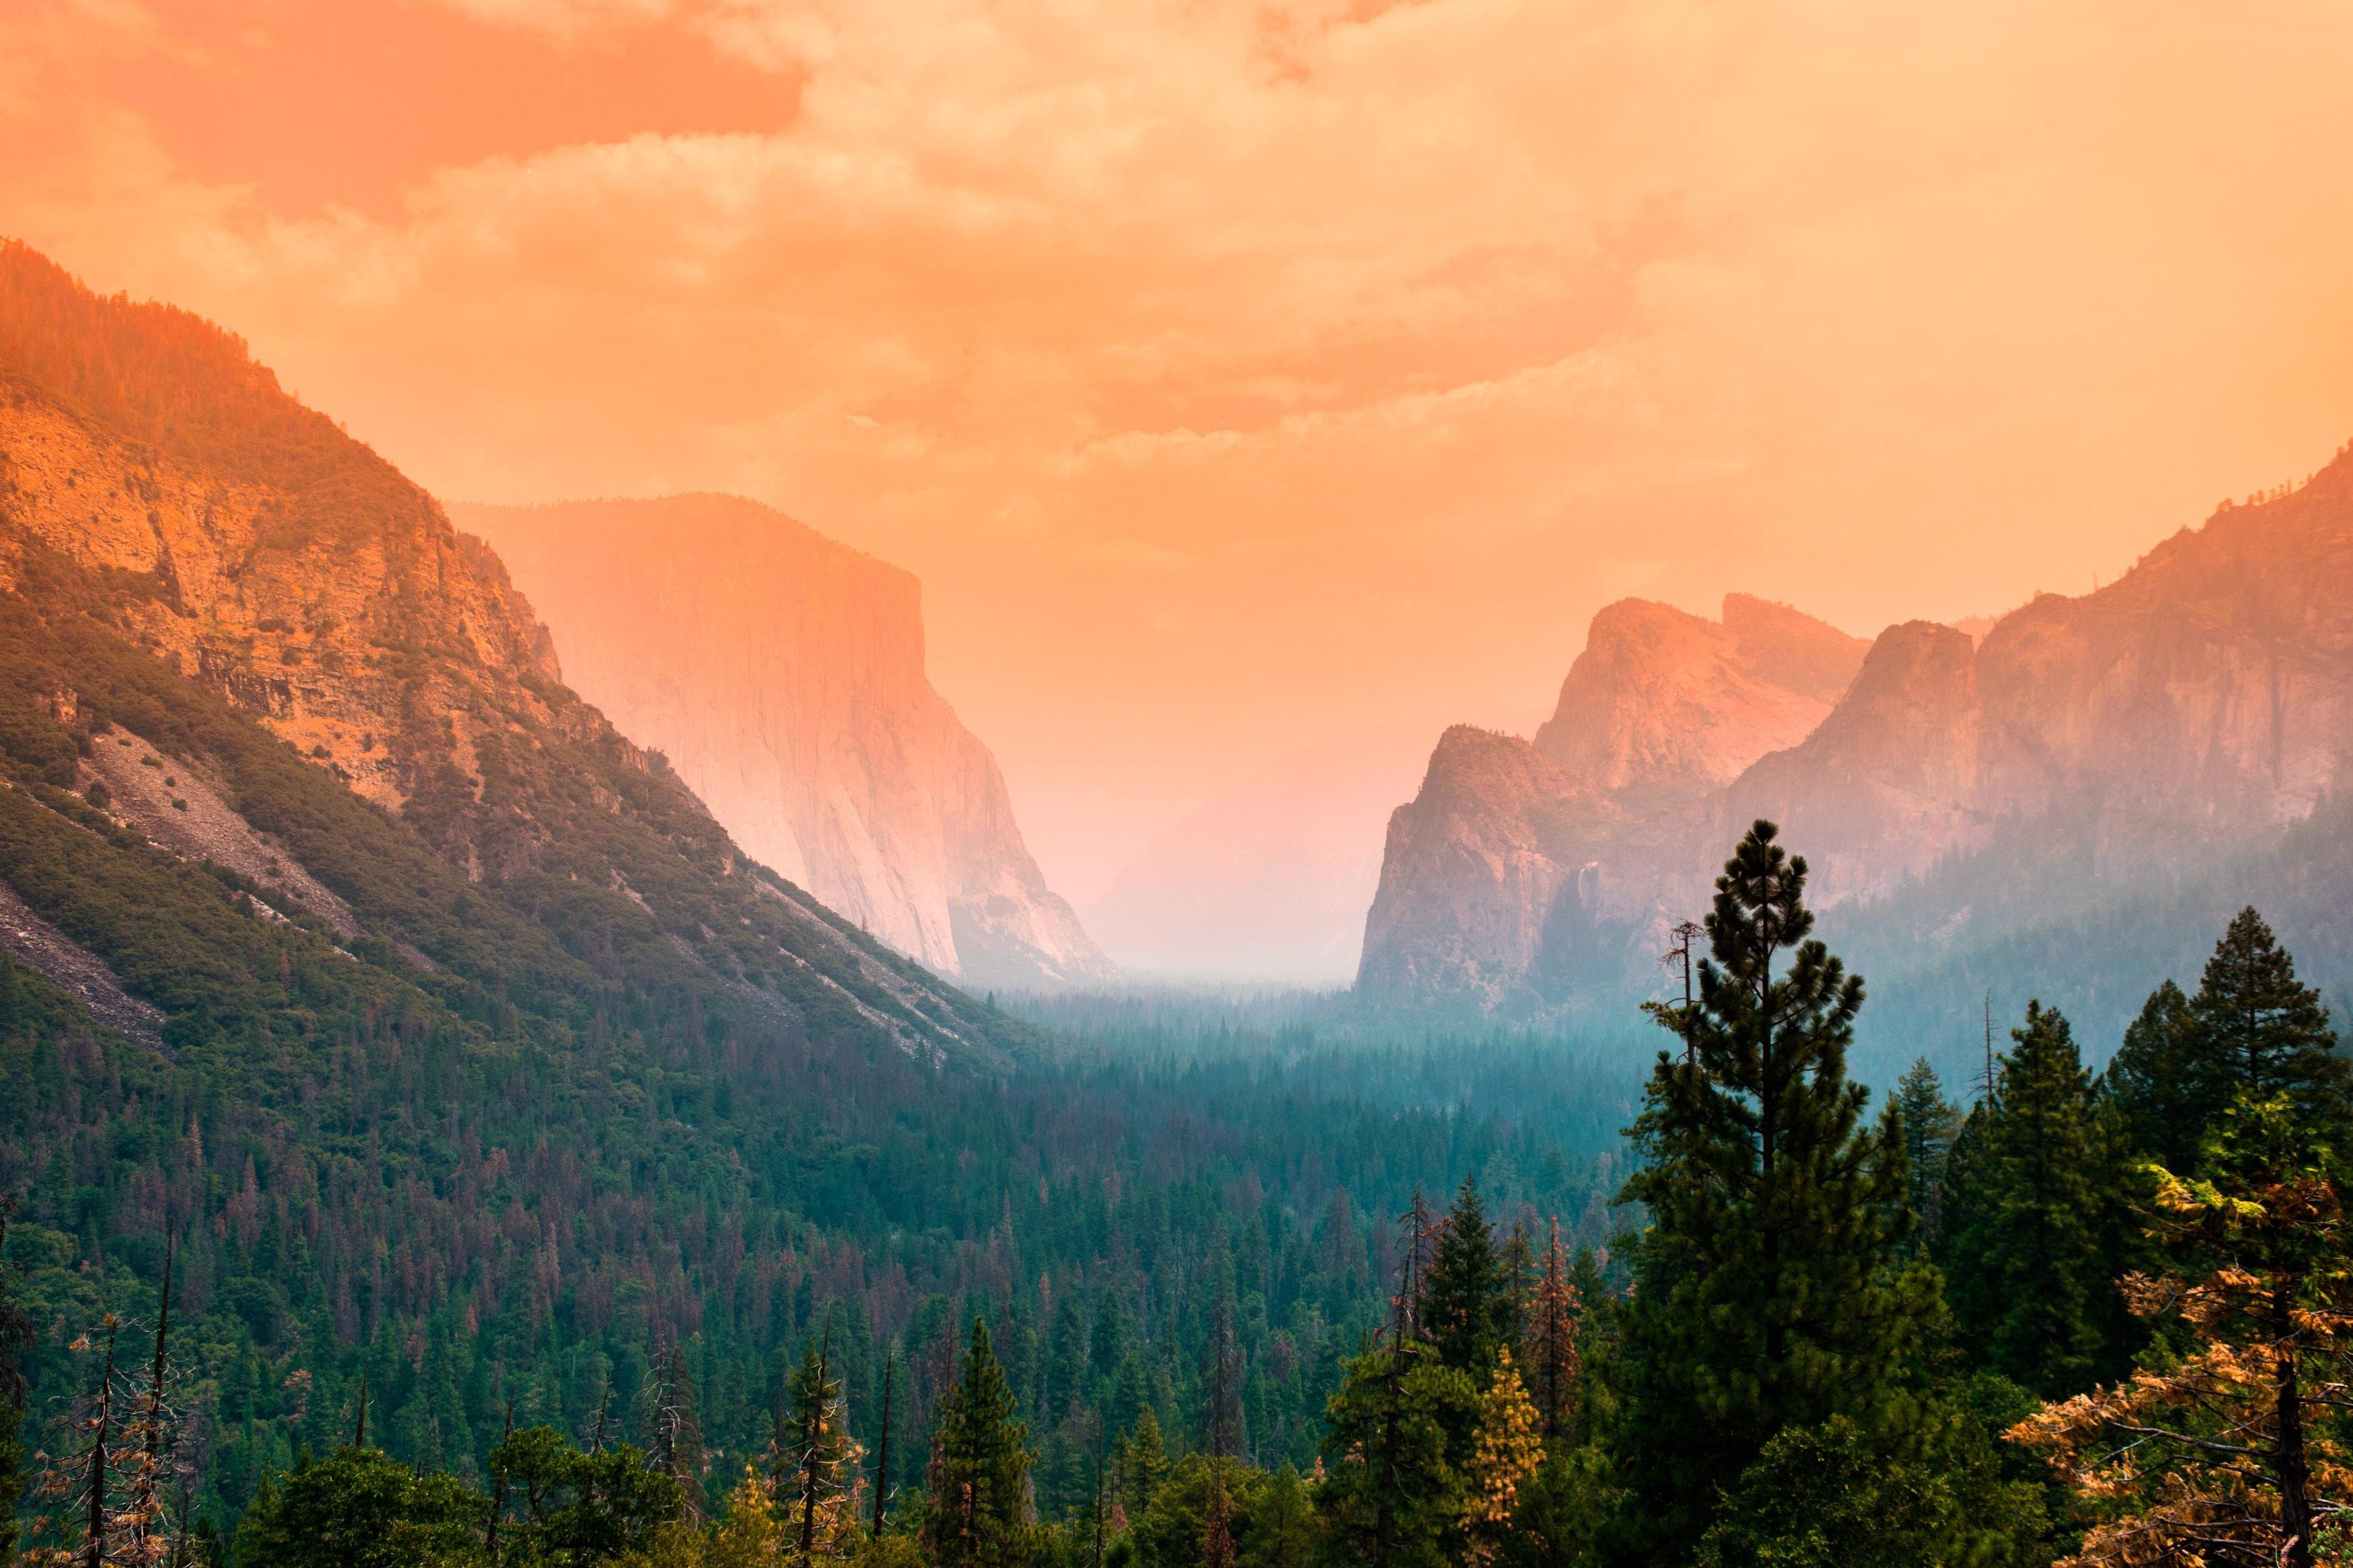 of Yosemite 4K wallpaper for your desktop or mobile screen